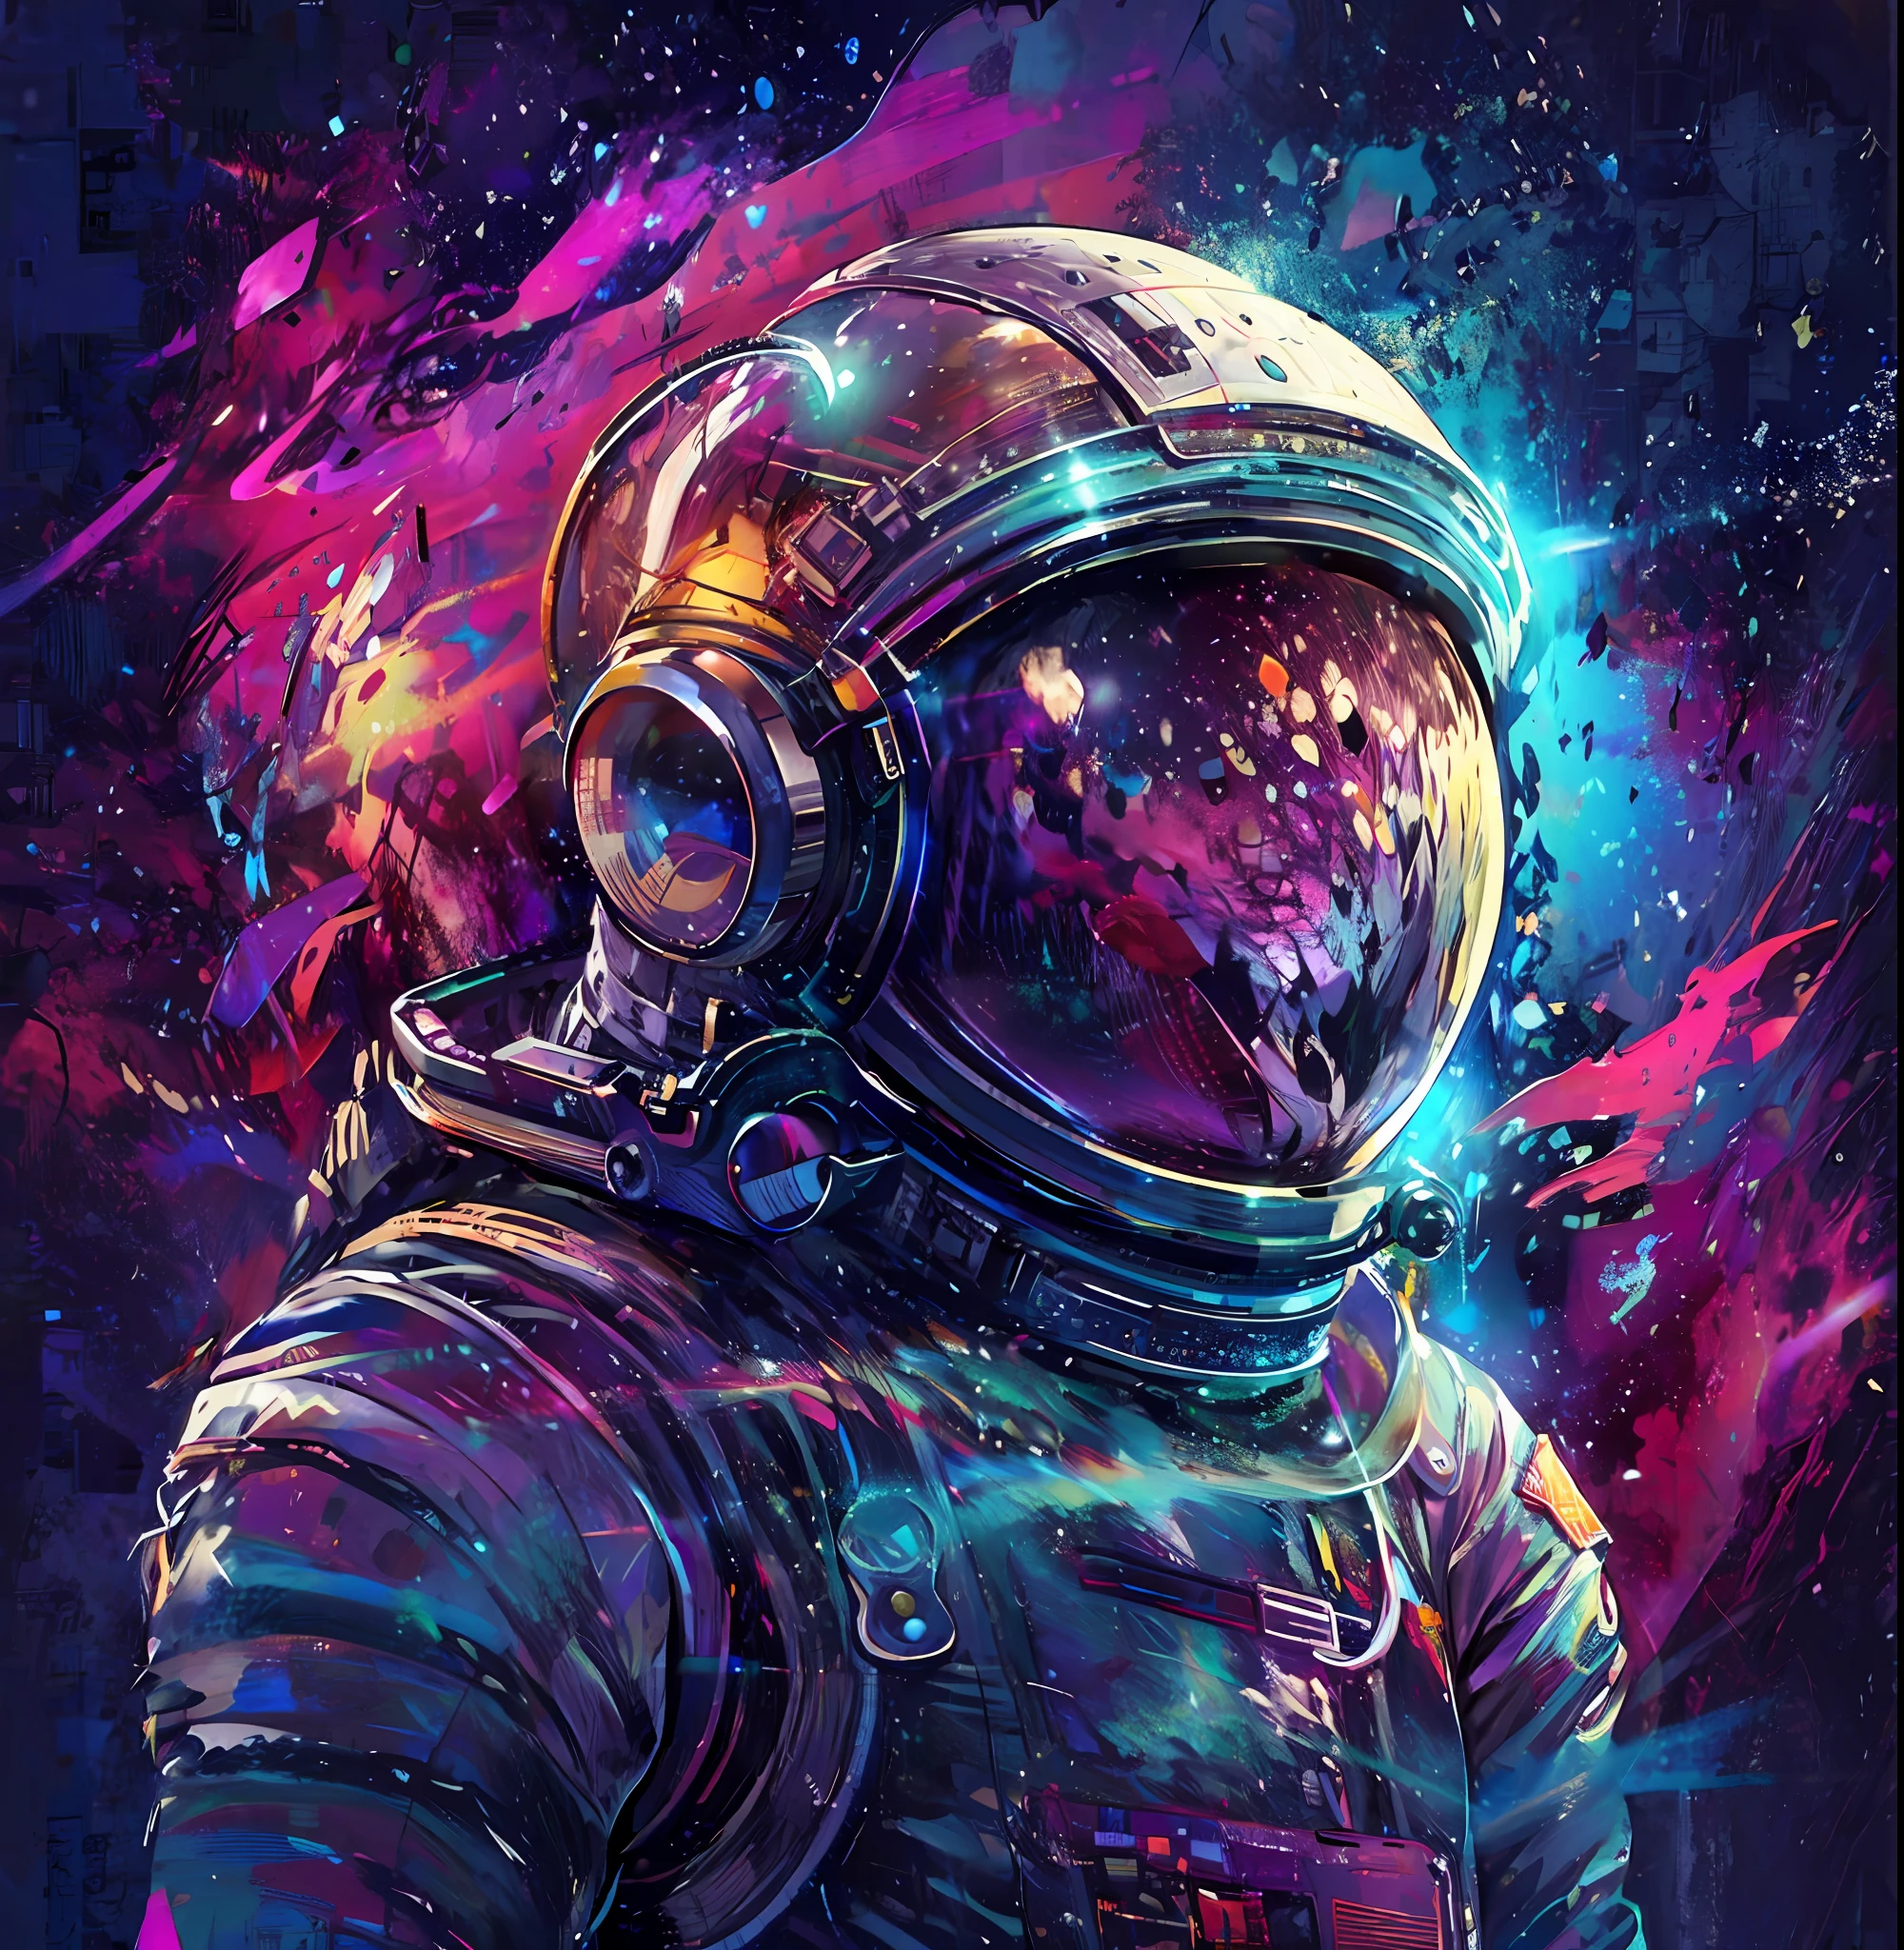 um close up de uma pessoa em um traje espacial com um fundo colorido, cores do espaço, astronauta solitário, astronauta, arte espacial, cósmico e colorido, cosmonauta, Retrato de um astronautaa, astronautaa detalhado, cores cósmicas, papel de parede incrível, em traje espacial, só uma piada, no espaço, cheio de cores e detalhes ricos, Retrato do astronautaa, astronauta futurista